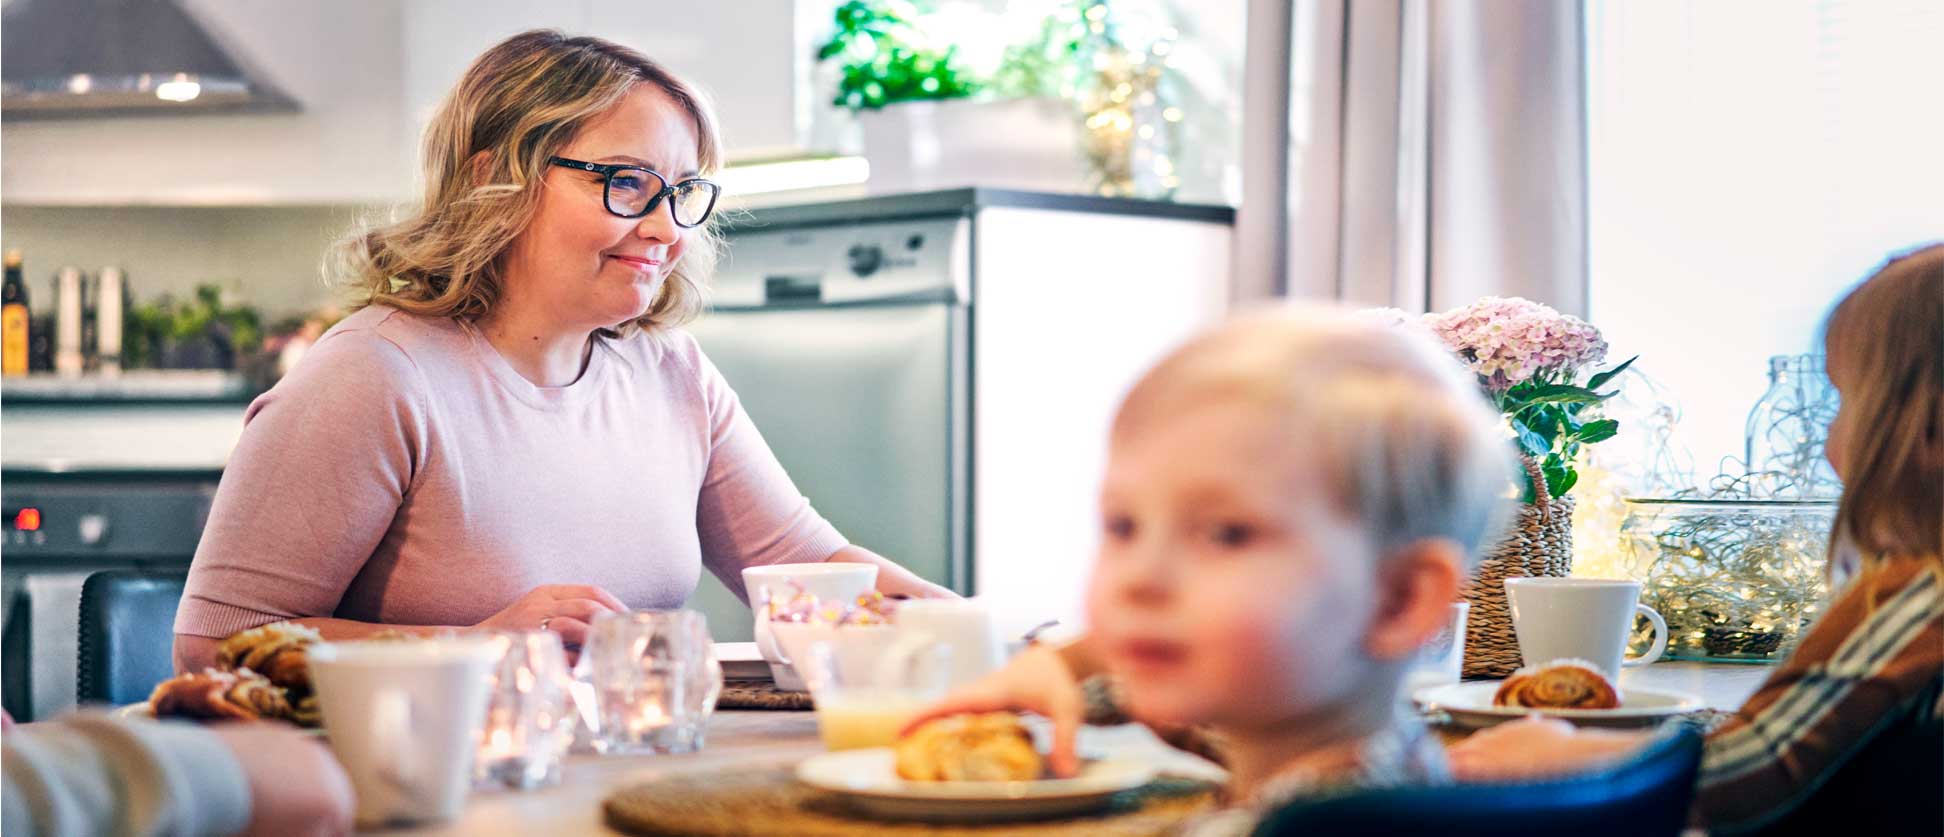 Loimi-Häme: Vapaa-ajan tapaturmavakuutus varmisti työntekijälle nopean  hoidon ja työnantajalle päivärahakorvauksen | LähiTapiola